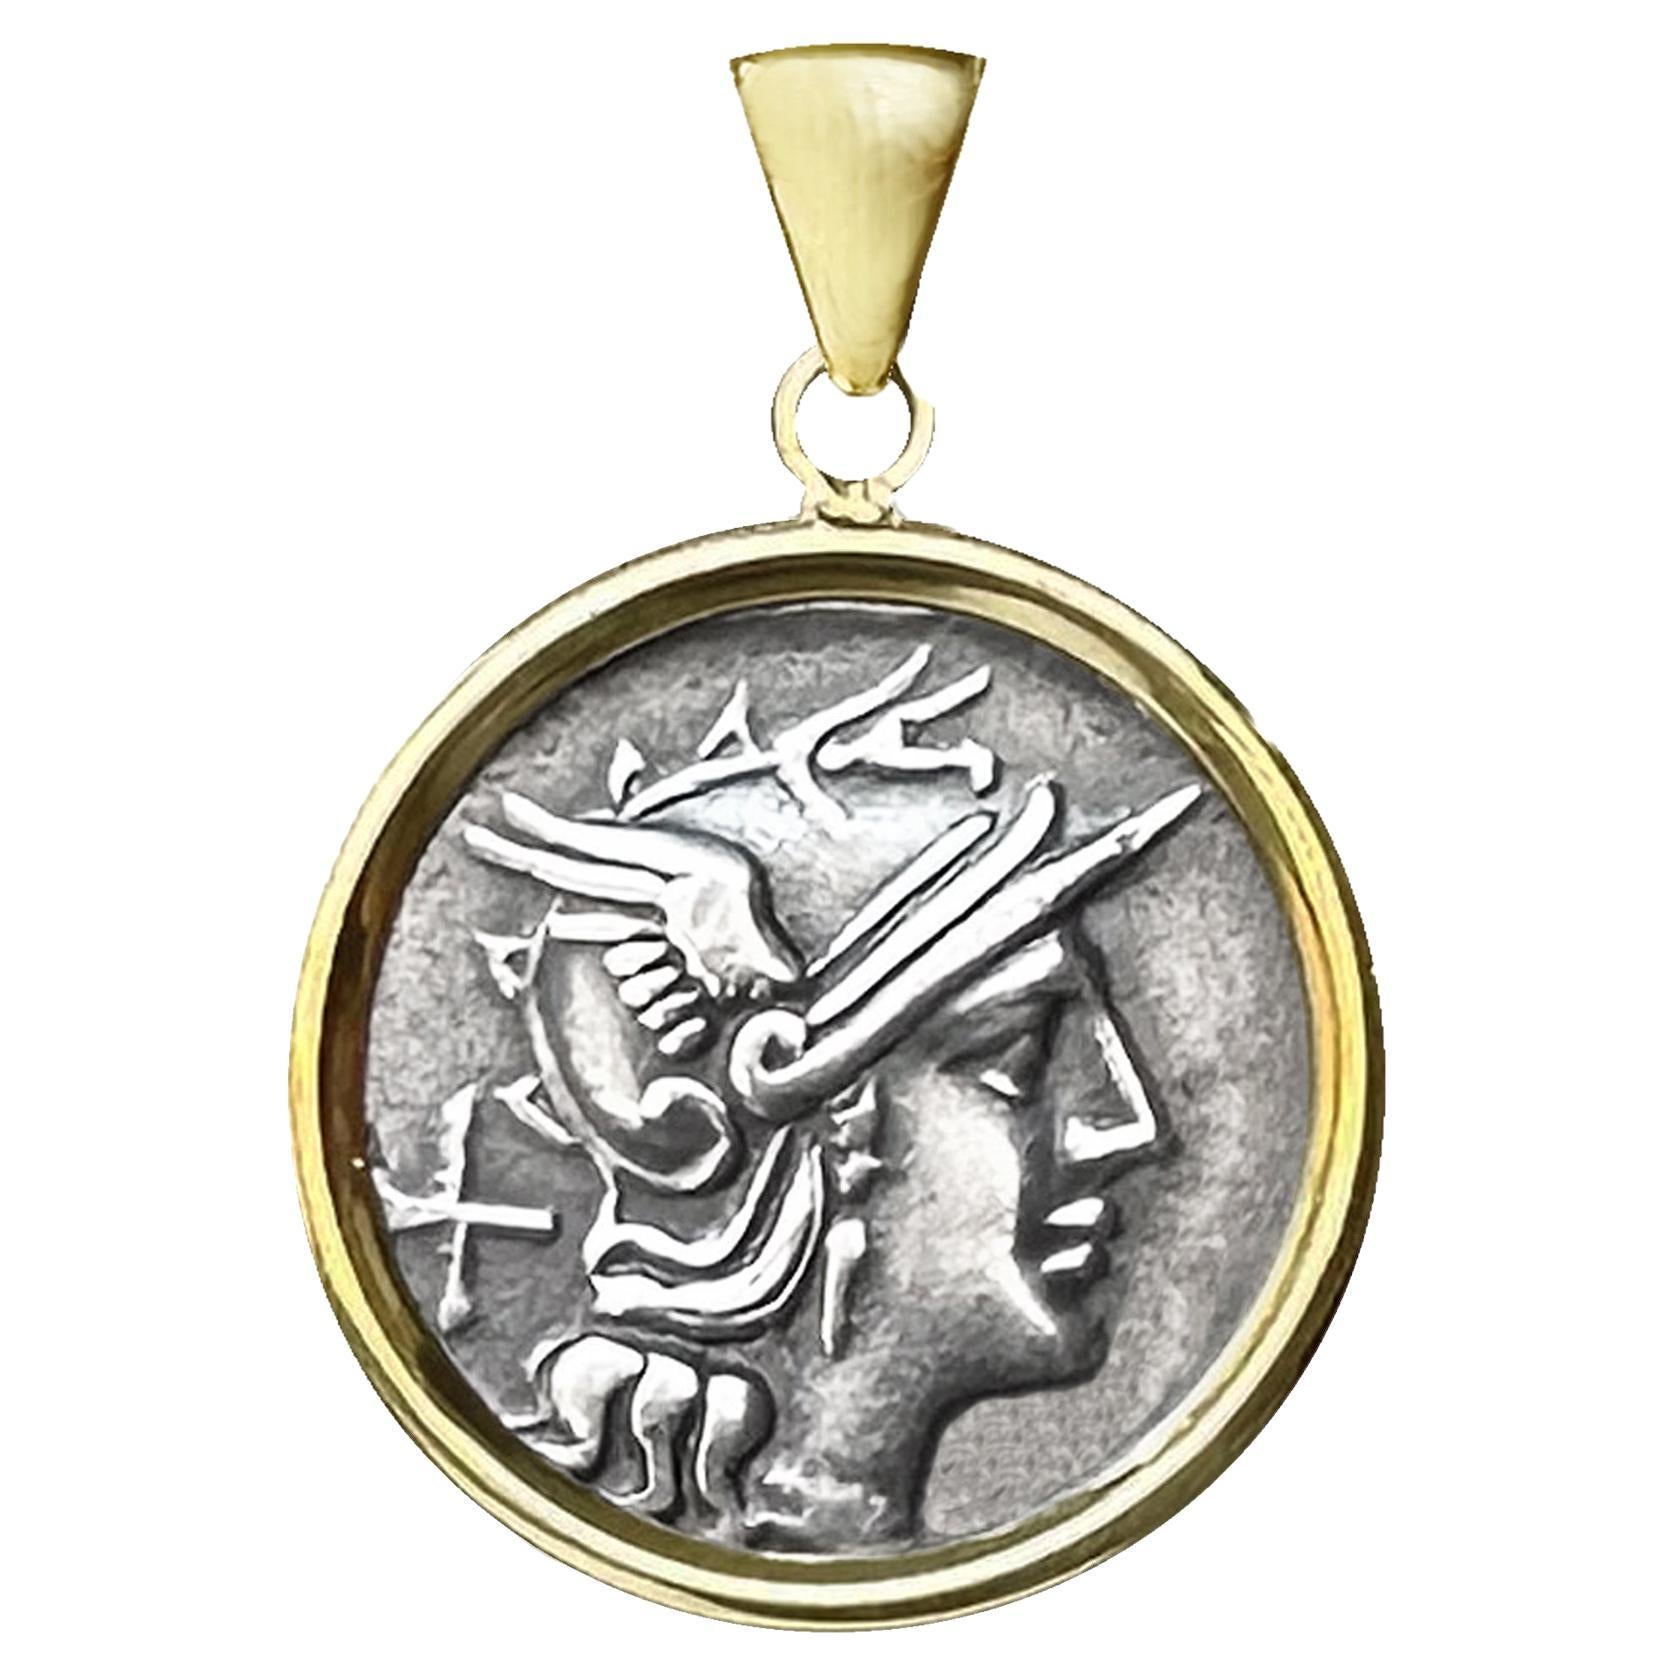 Pendentif authentique en or 18 carats représentant la déesse Rome, datant de 150 avant J.-C.